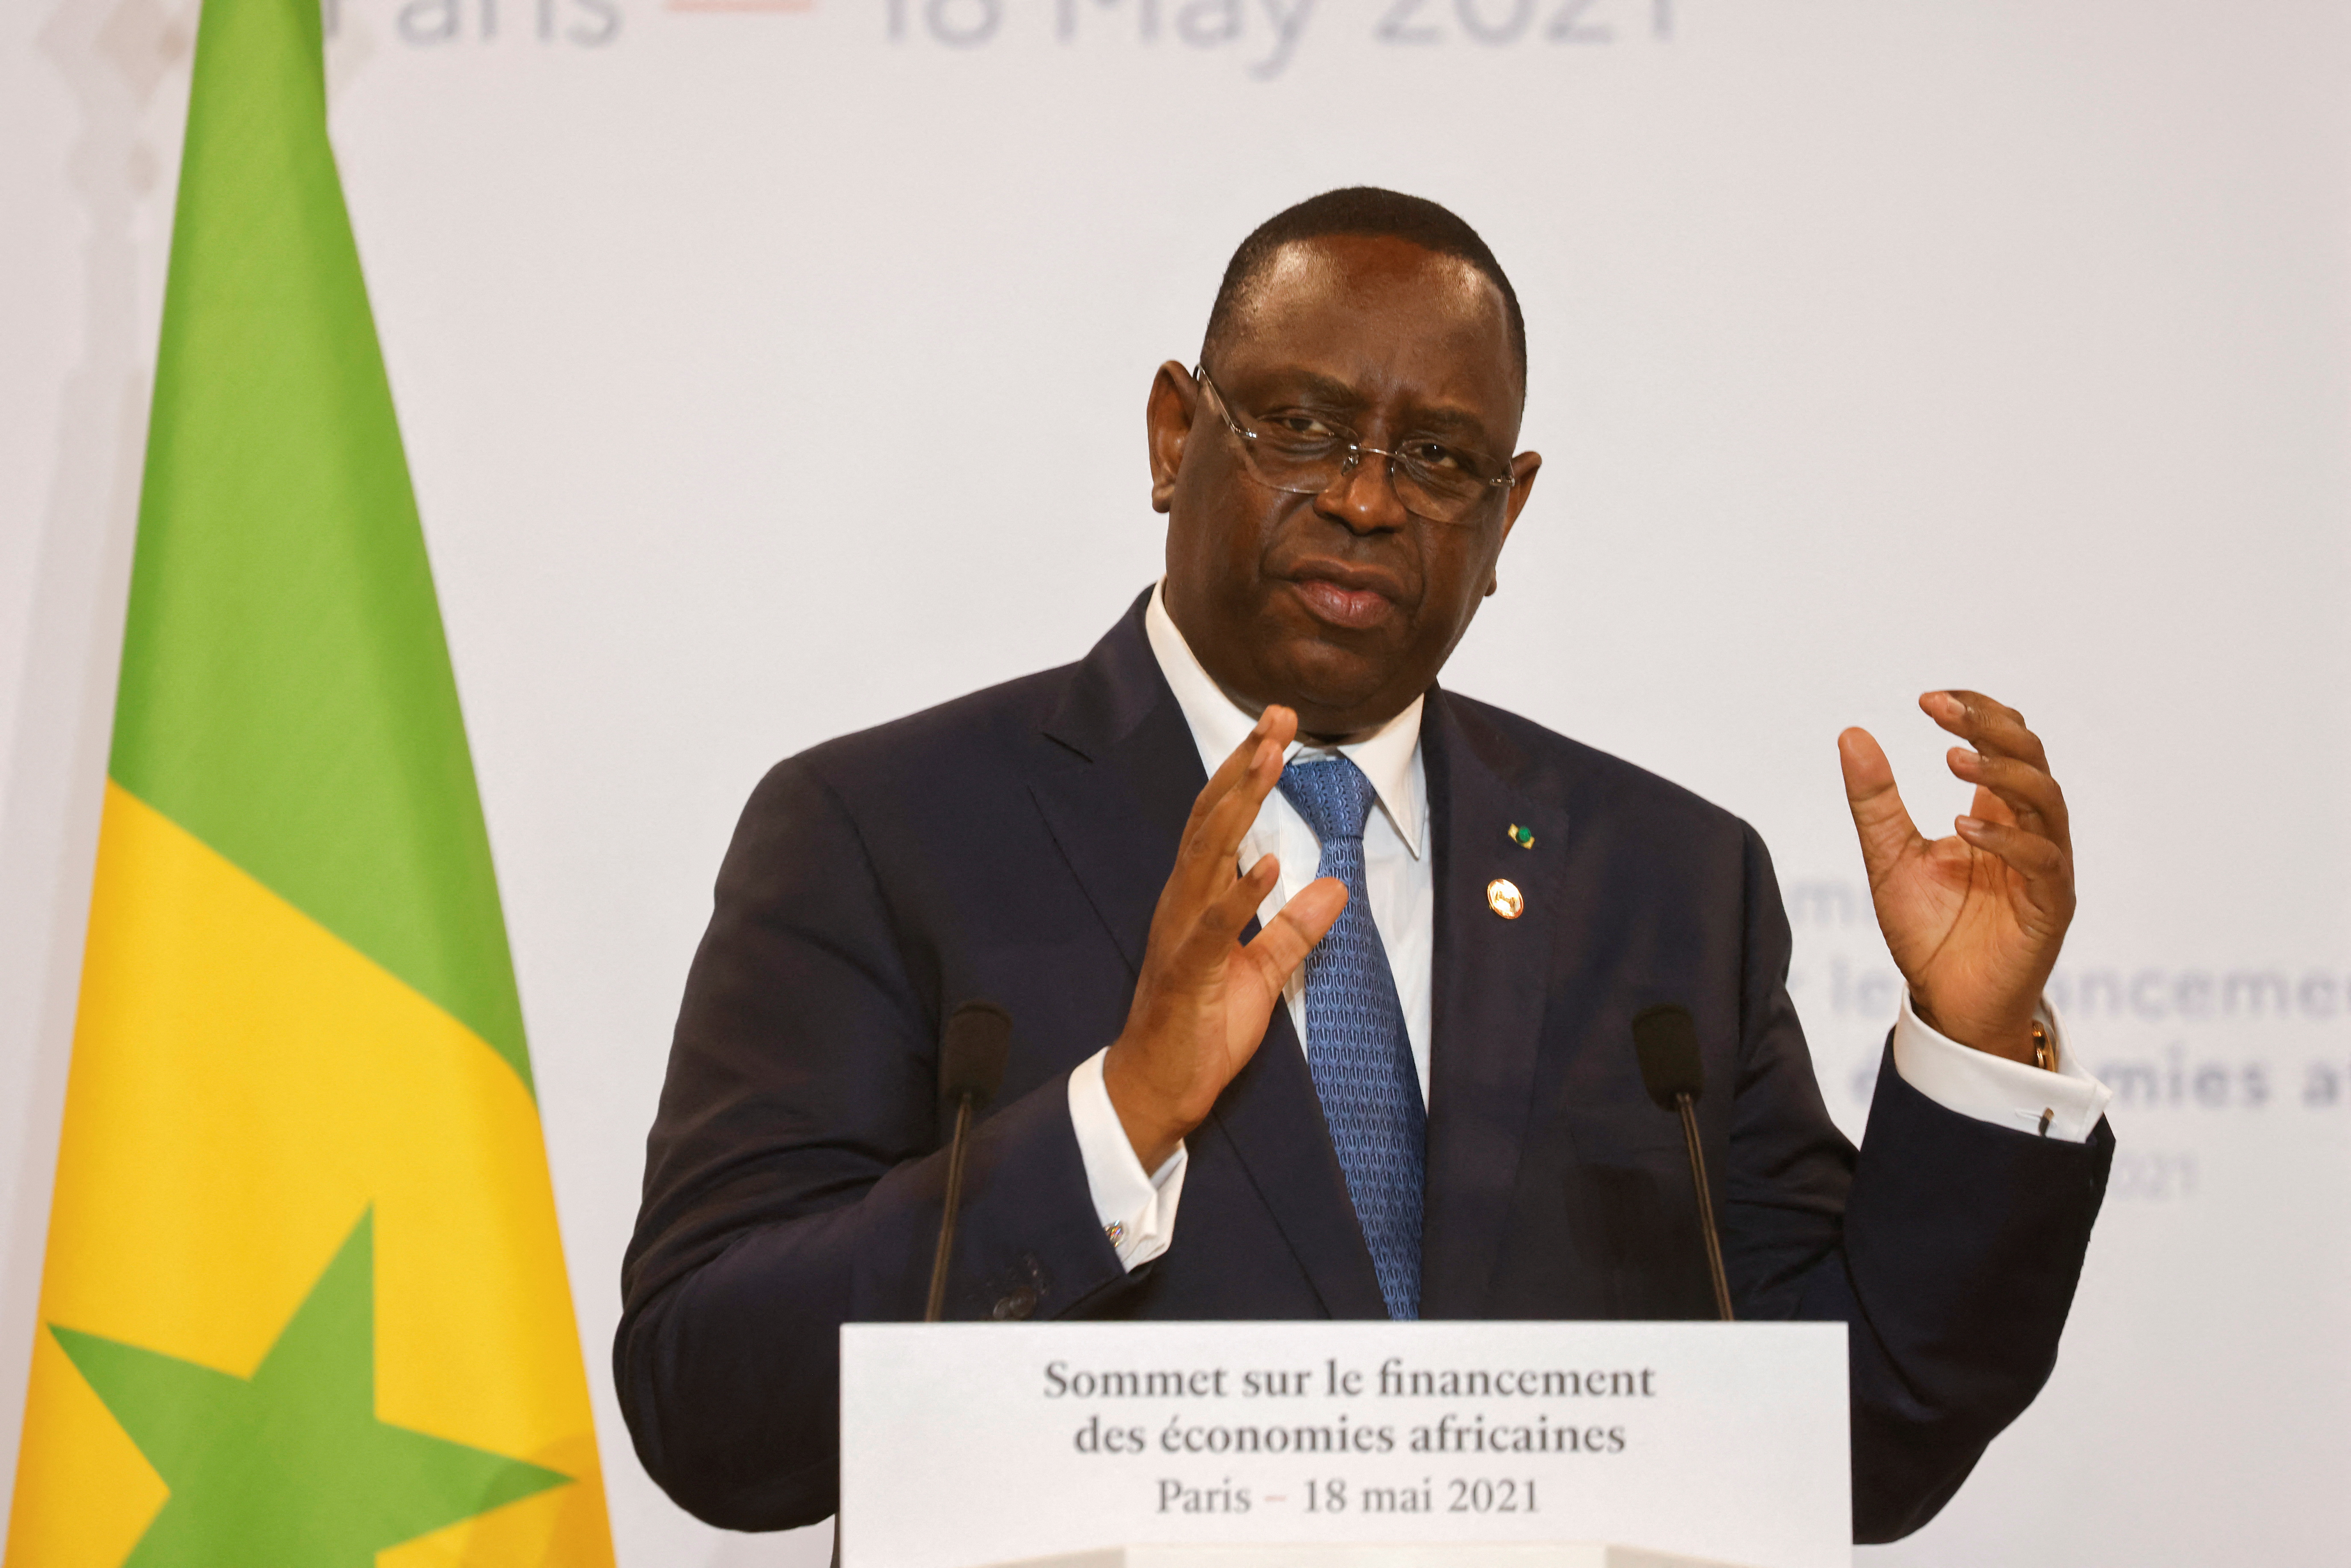 Financing of African Economies summit in Paris